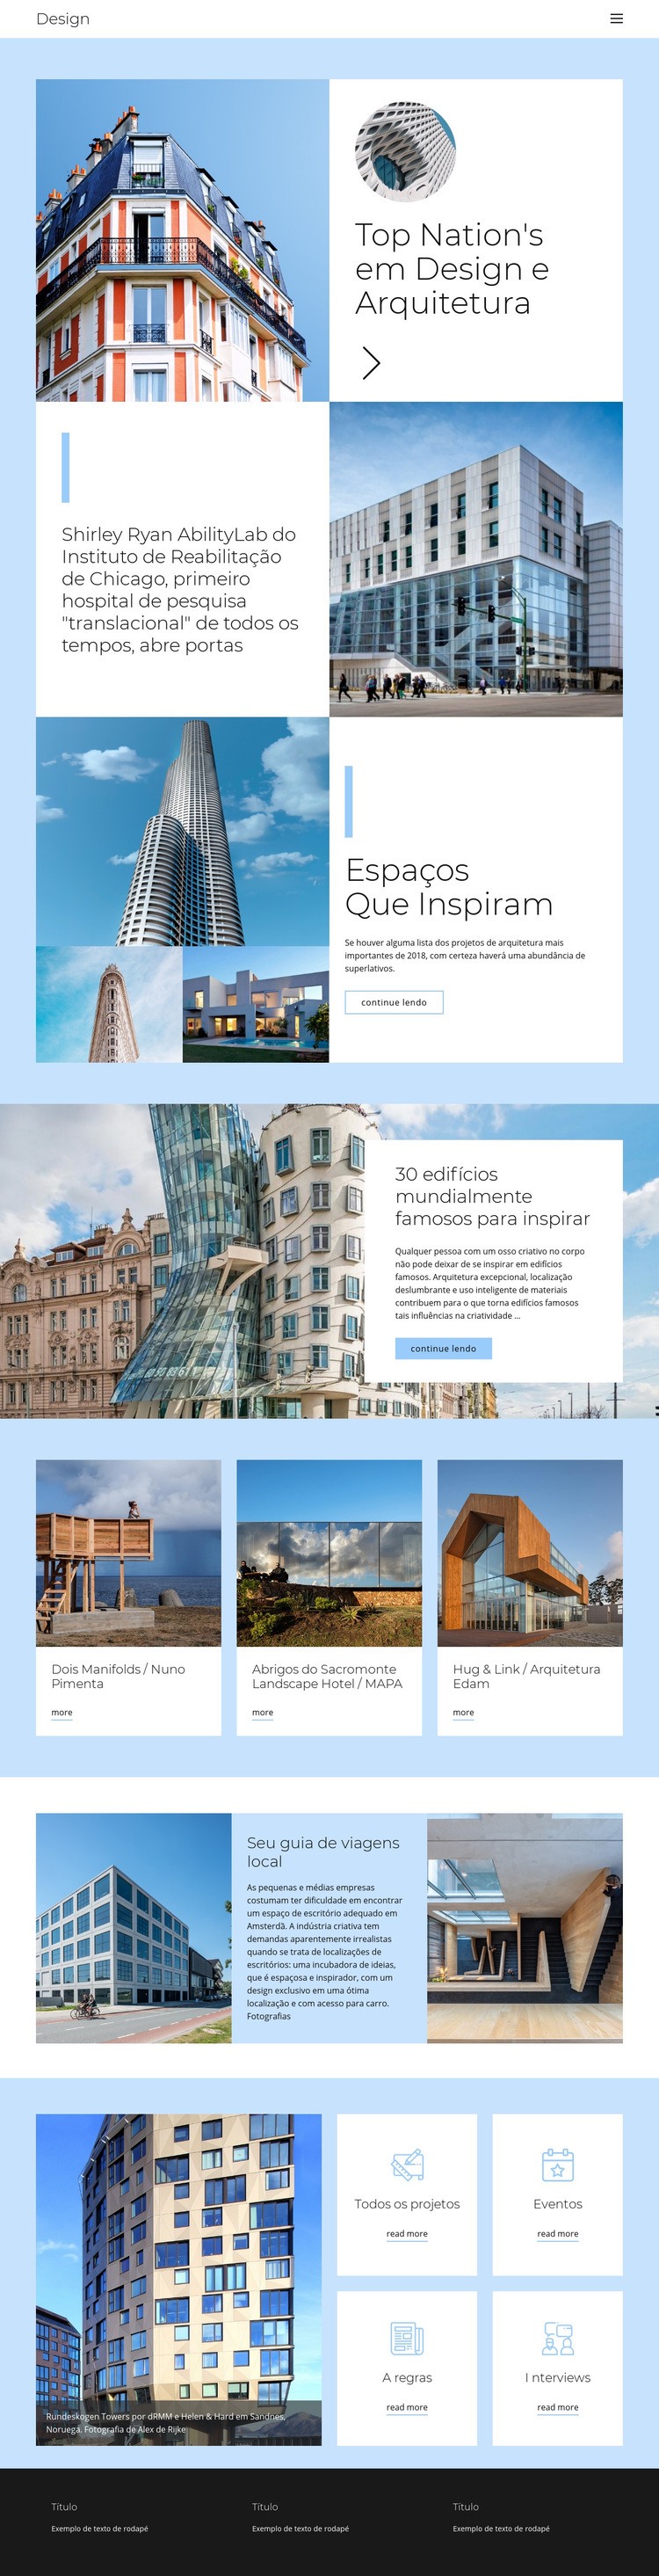 Guia da cidade de arquitetura Design do site